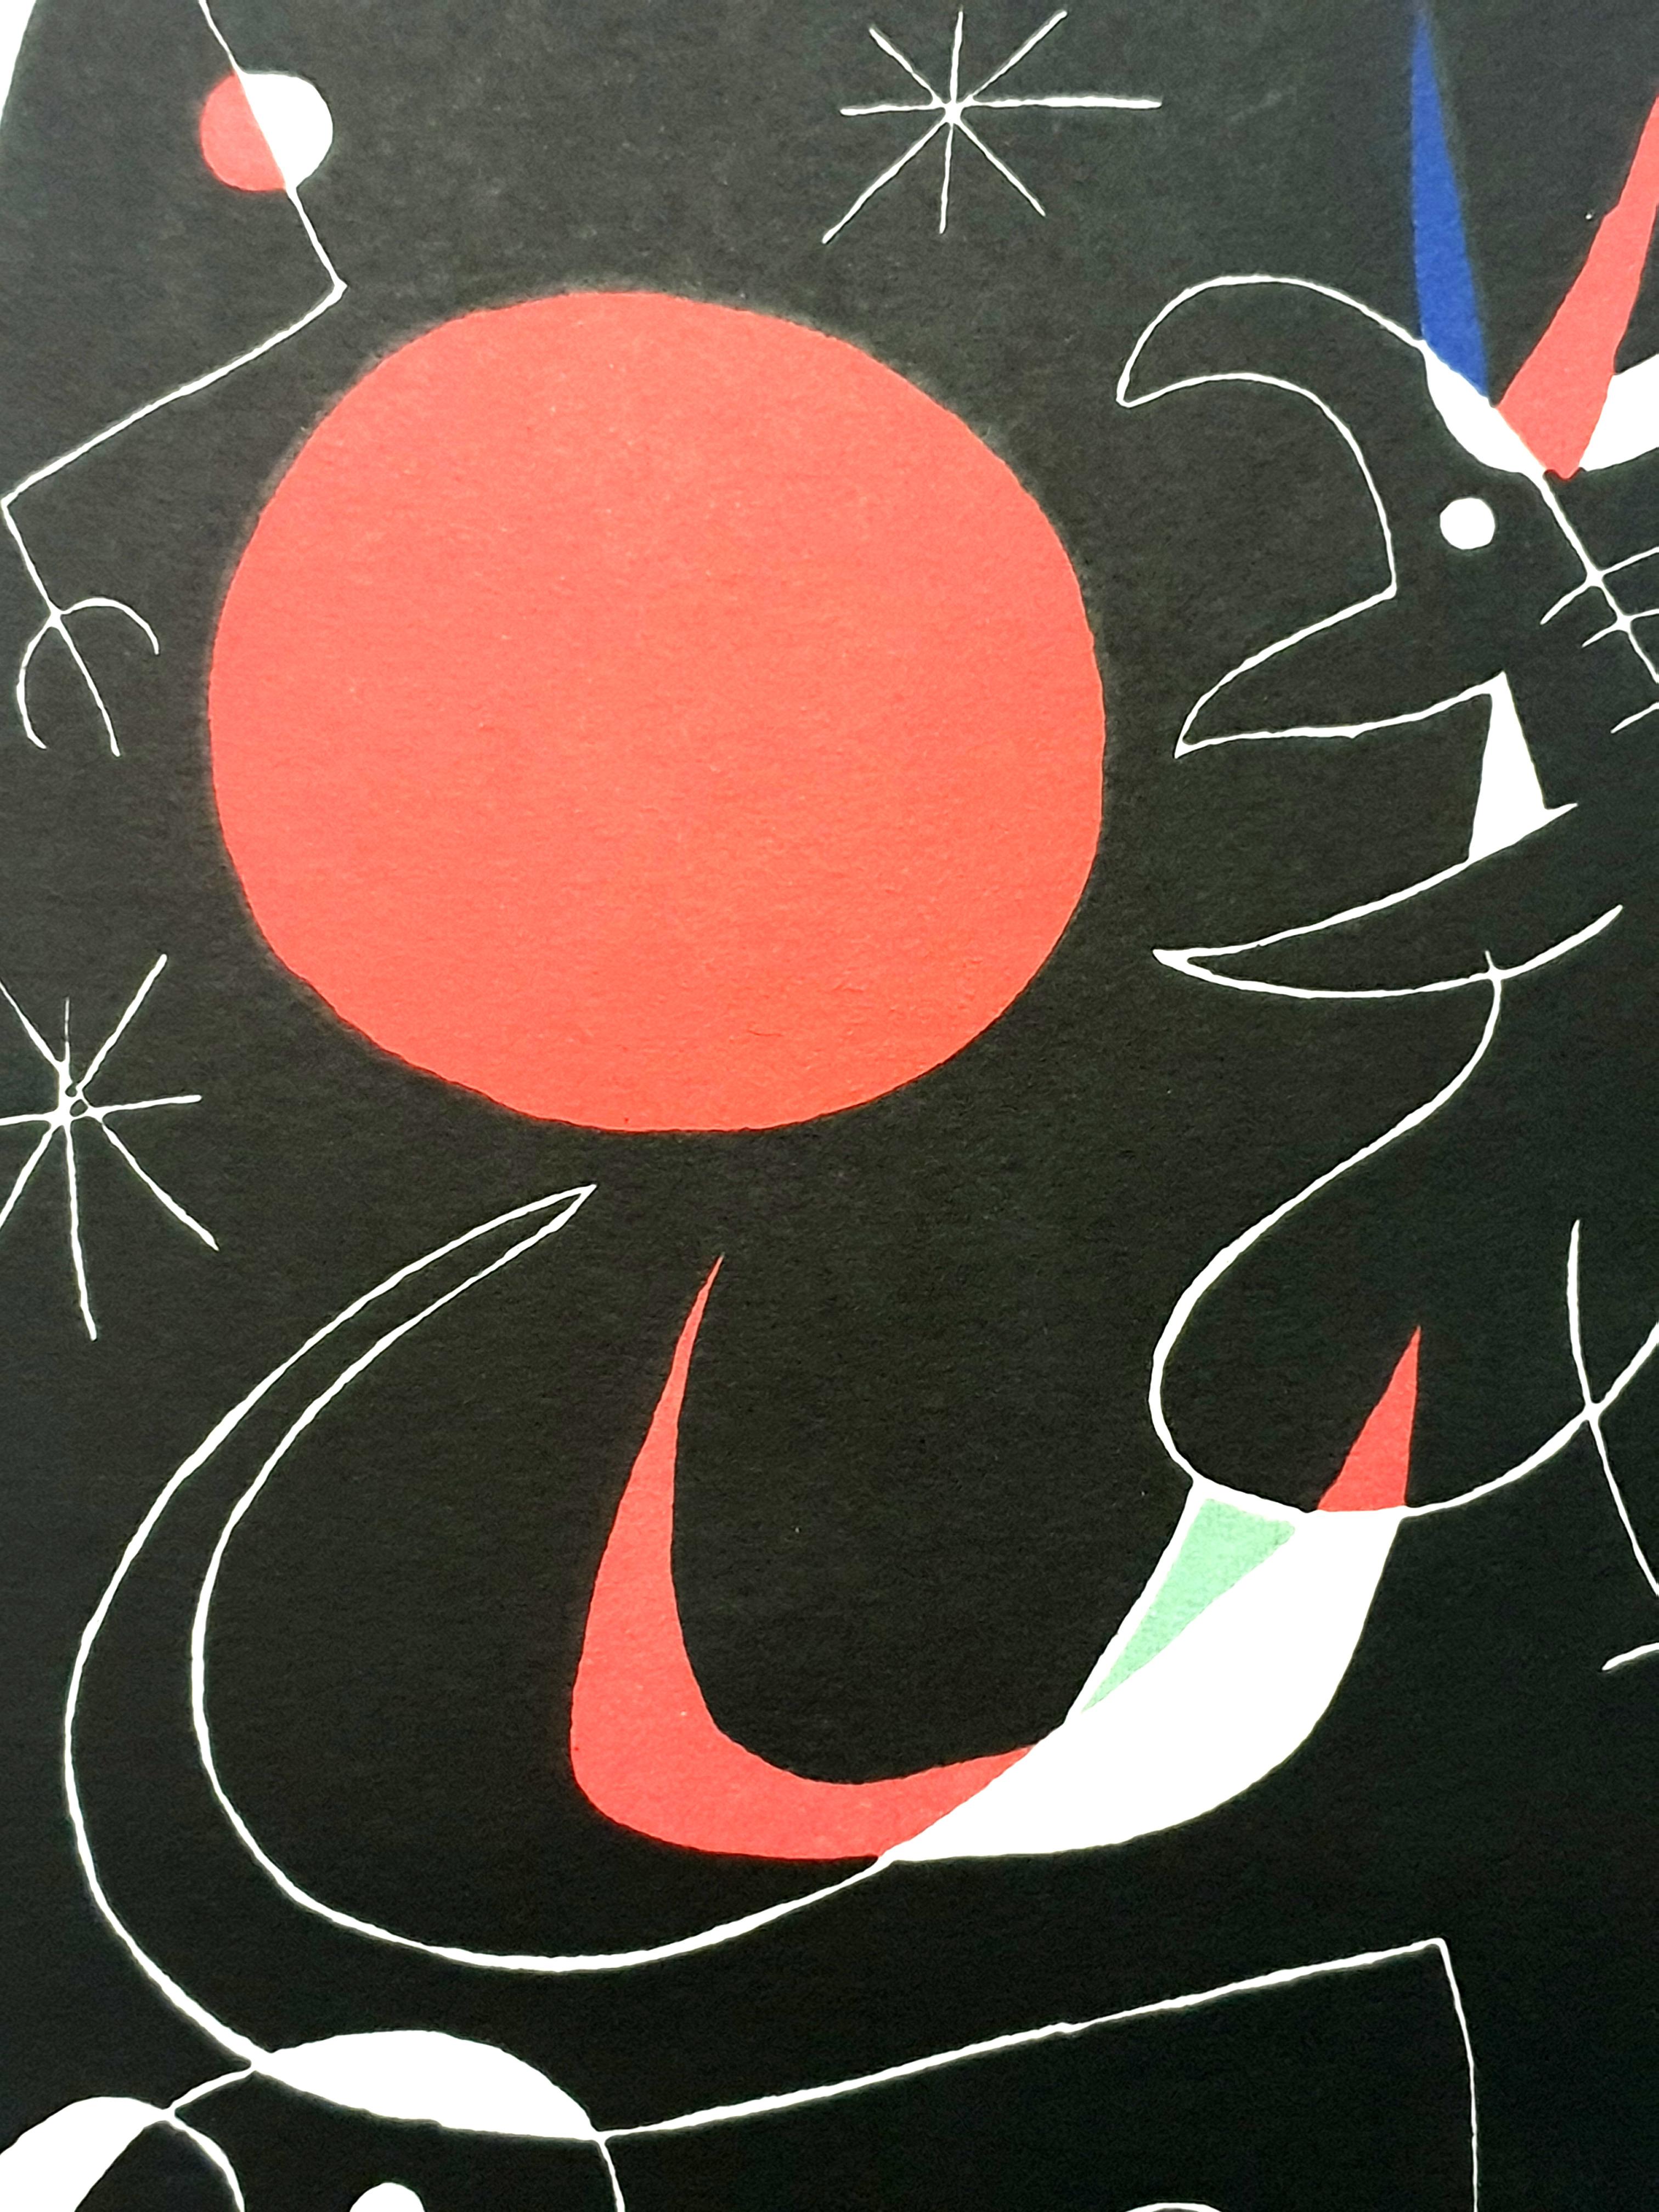 Joan Miro - Nachthimmel - Original Lithographie
Künstler: Joan Miro
Herausgeber: Maeght
Jahr: 1956
Abmessungen: 23 x 20 cm
Referenz: Mourlot 235
Unsigniert und nicht nummeriert wie ausgegeben.